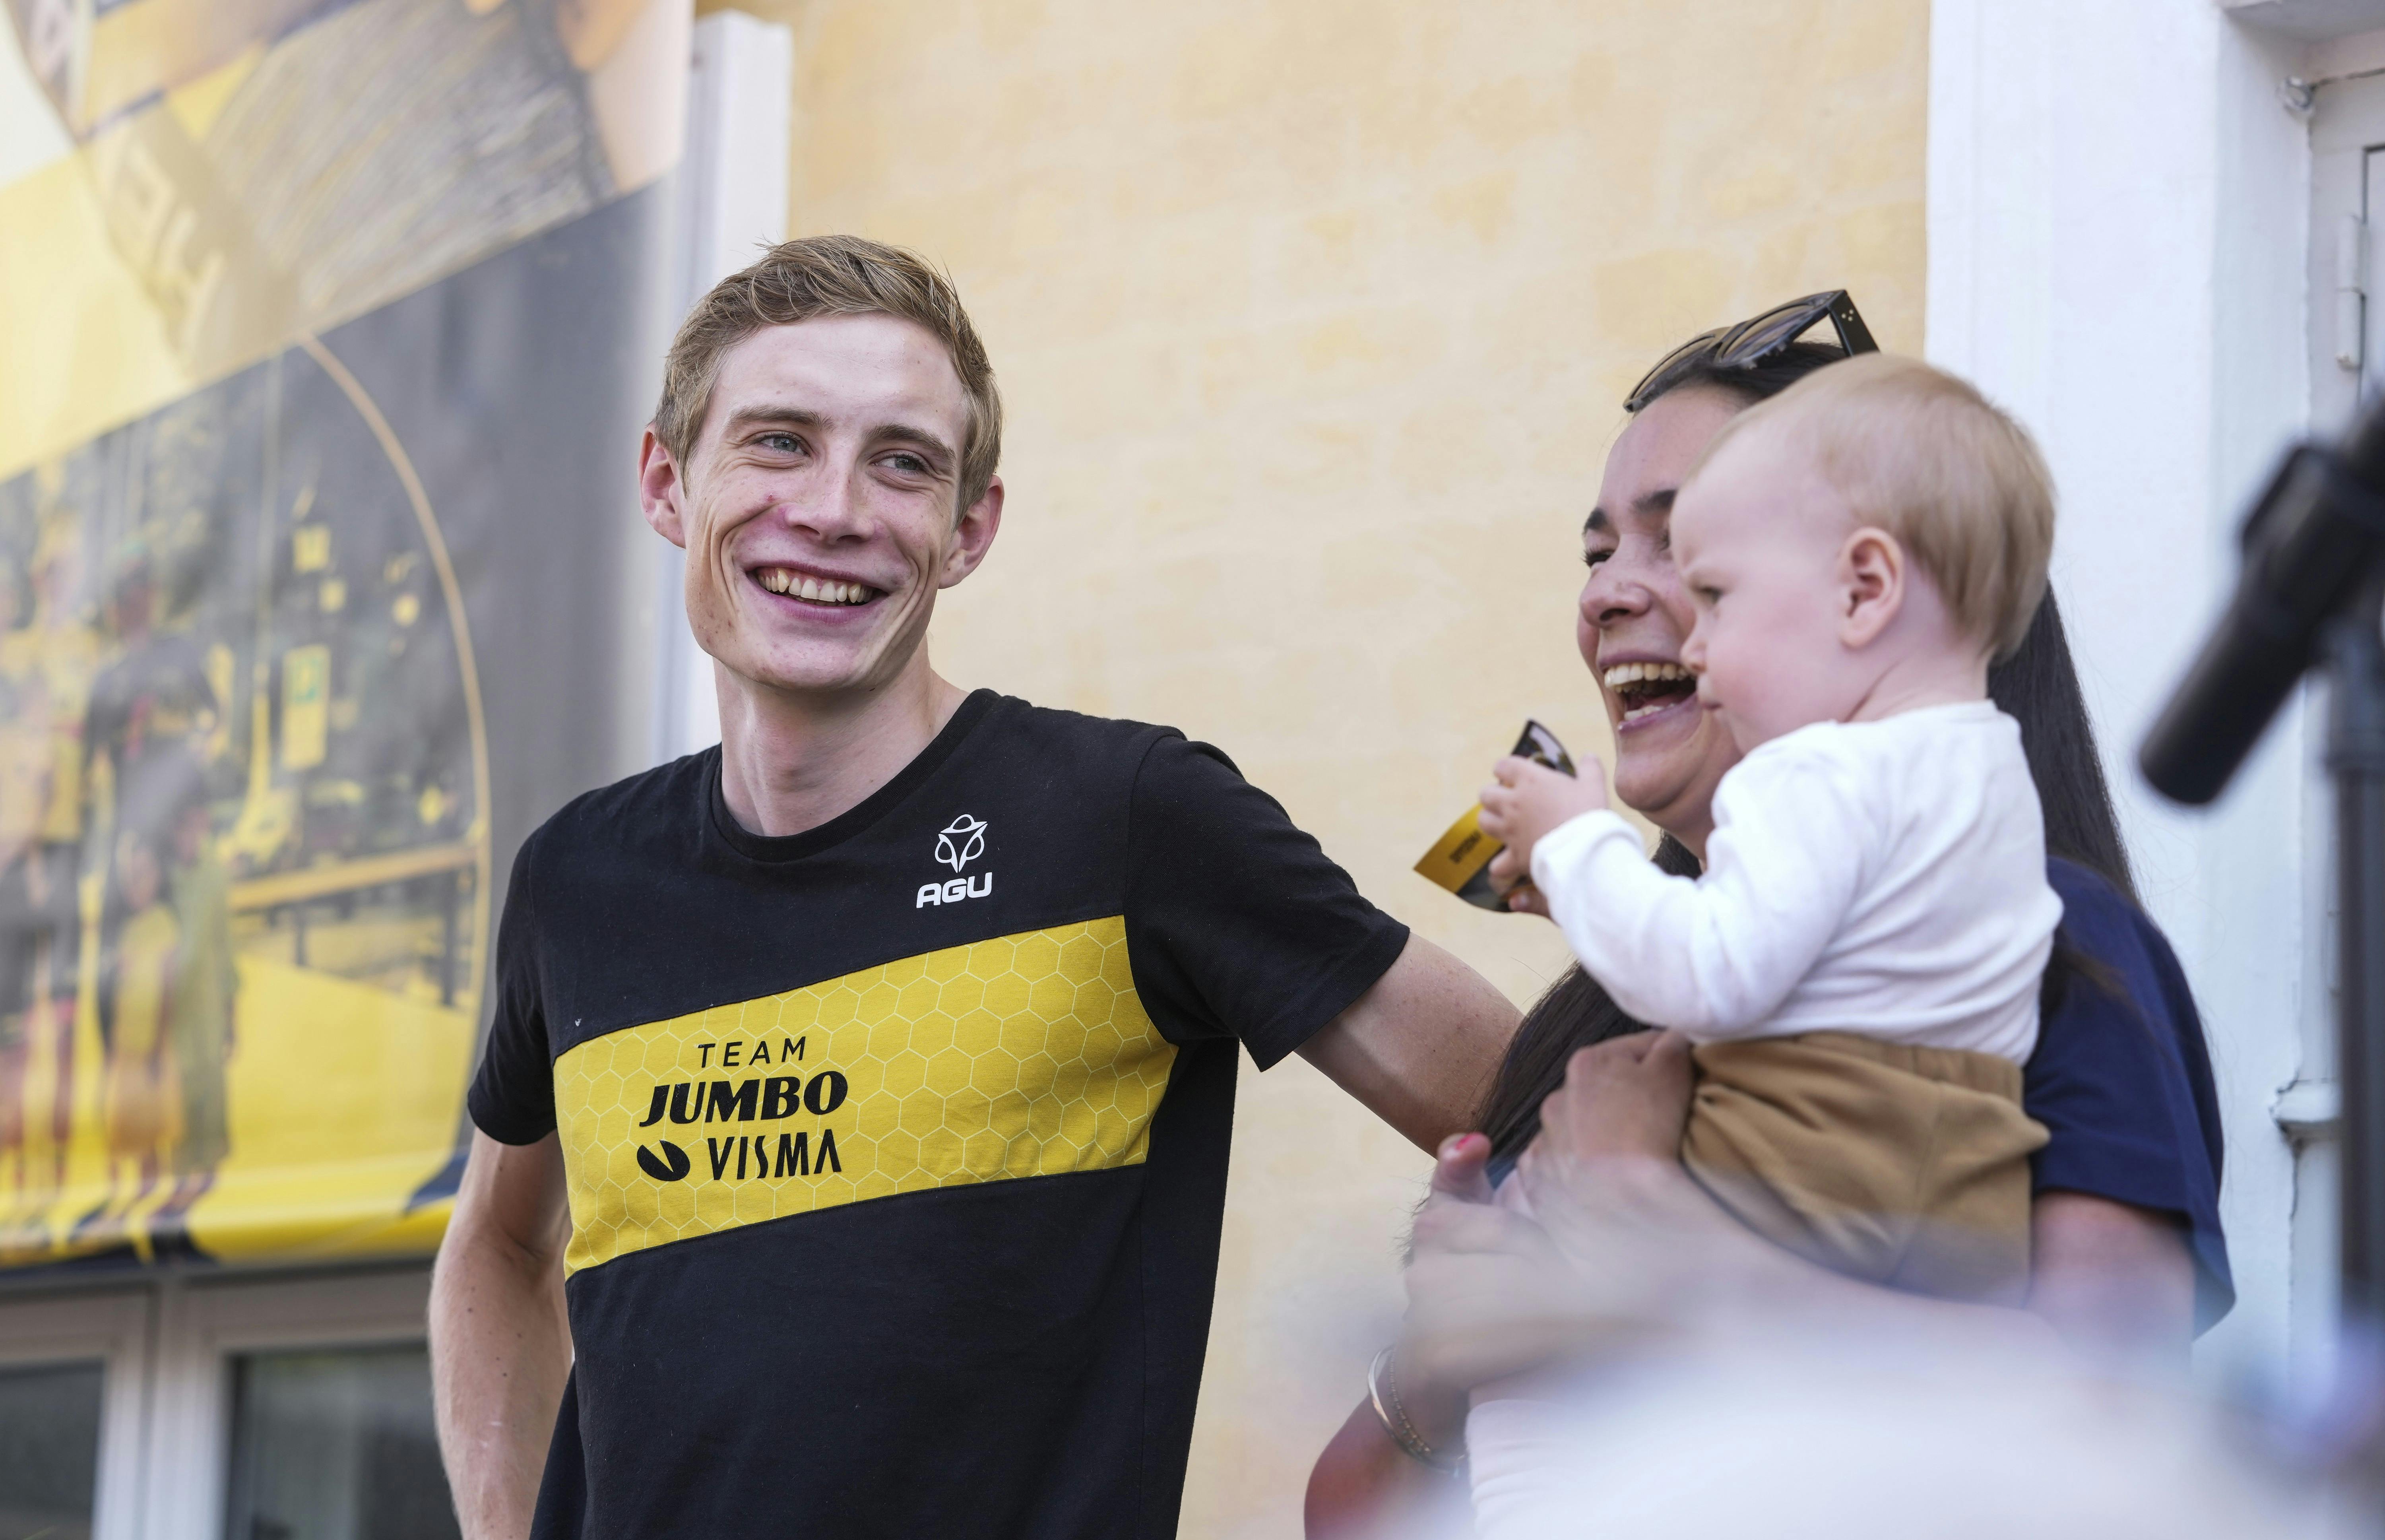 BilledBladet - Skive 24.07.2021 - Tour de France Jonas Vingegaard vender hjem. Modtagelse ved Skive Rådhus.Journalist Majken